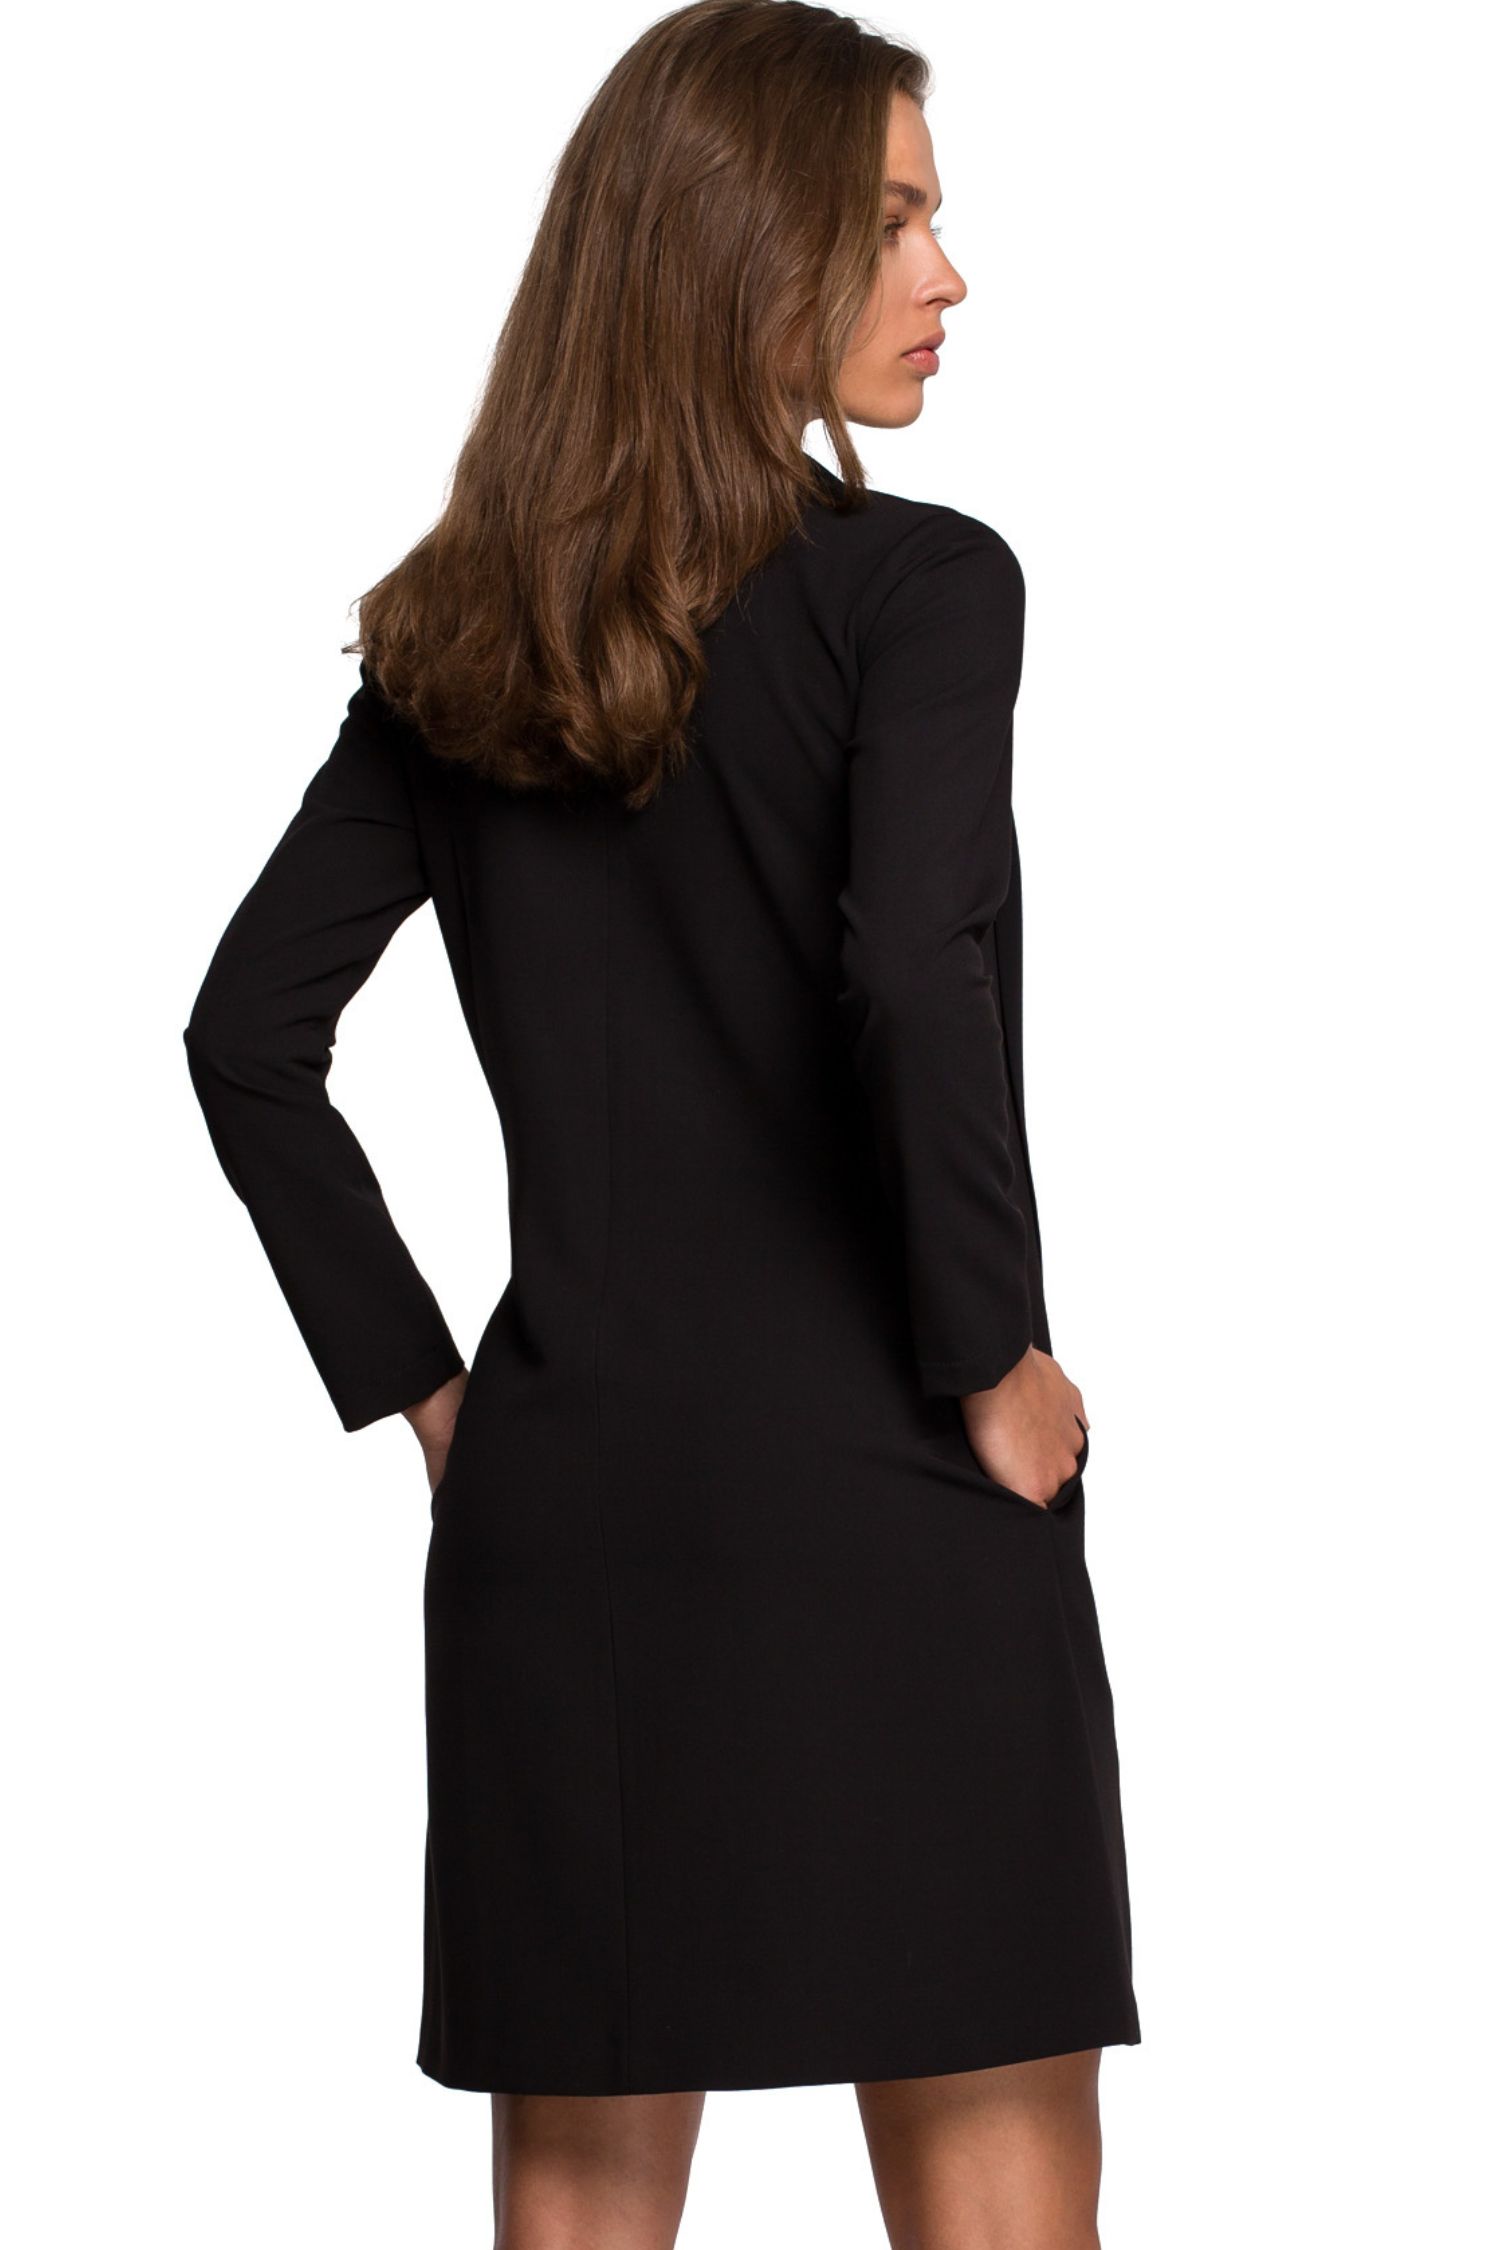 Opis: Sukienka trapezowa elegancka z dekoltem V i szyfonowym szalem czarna.